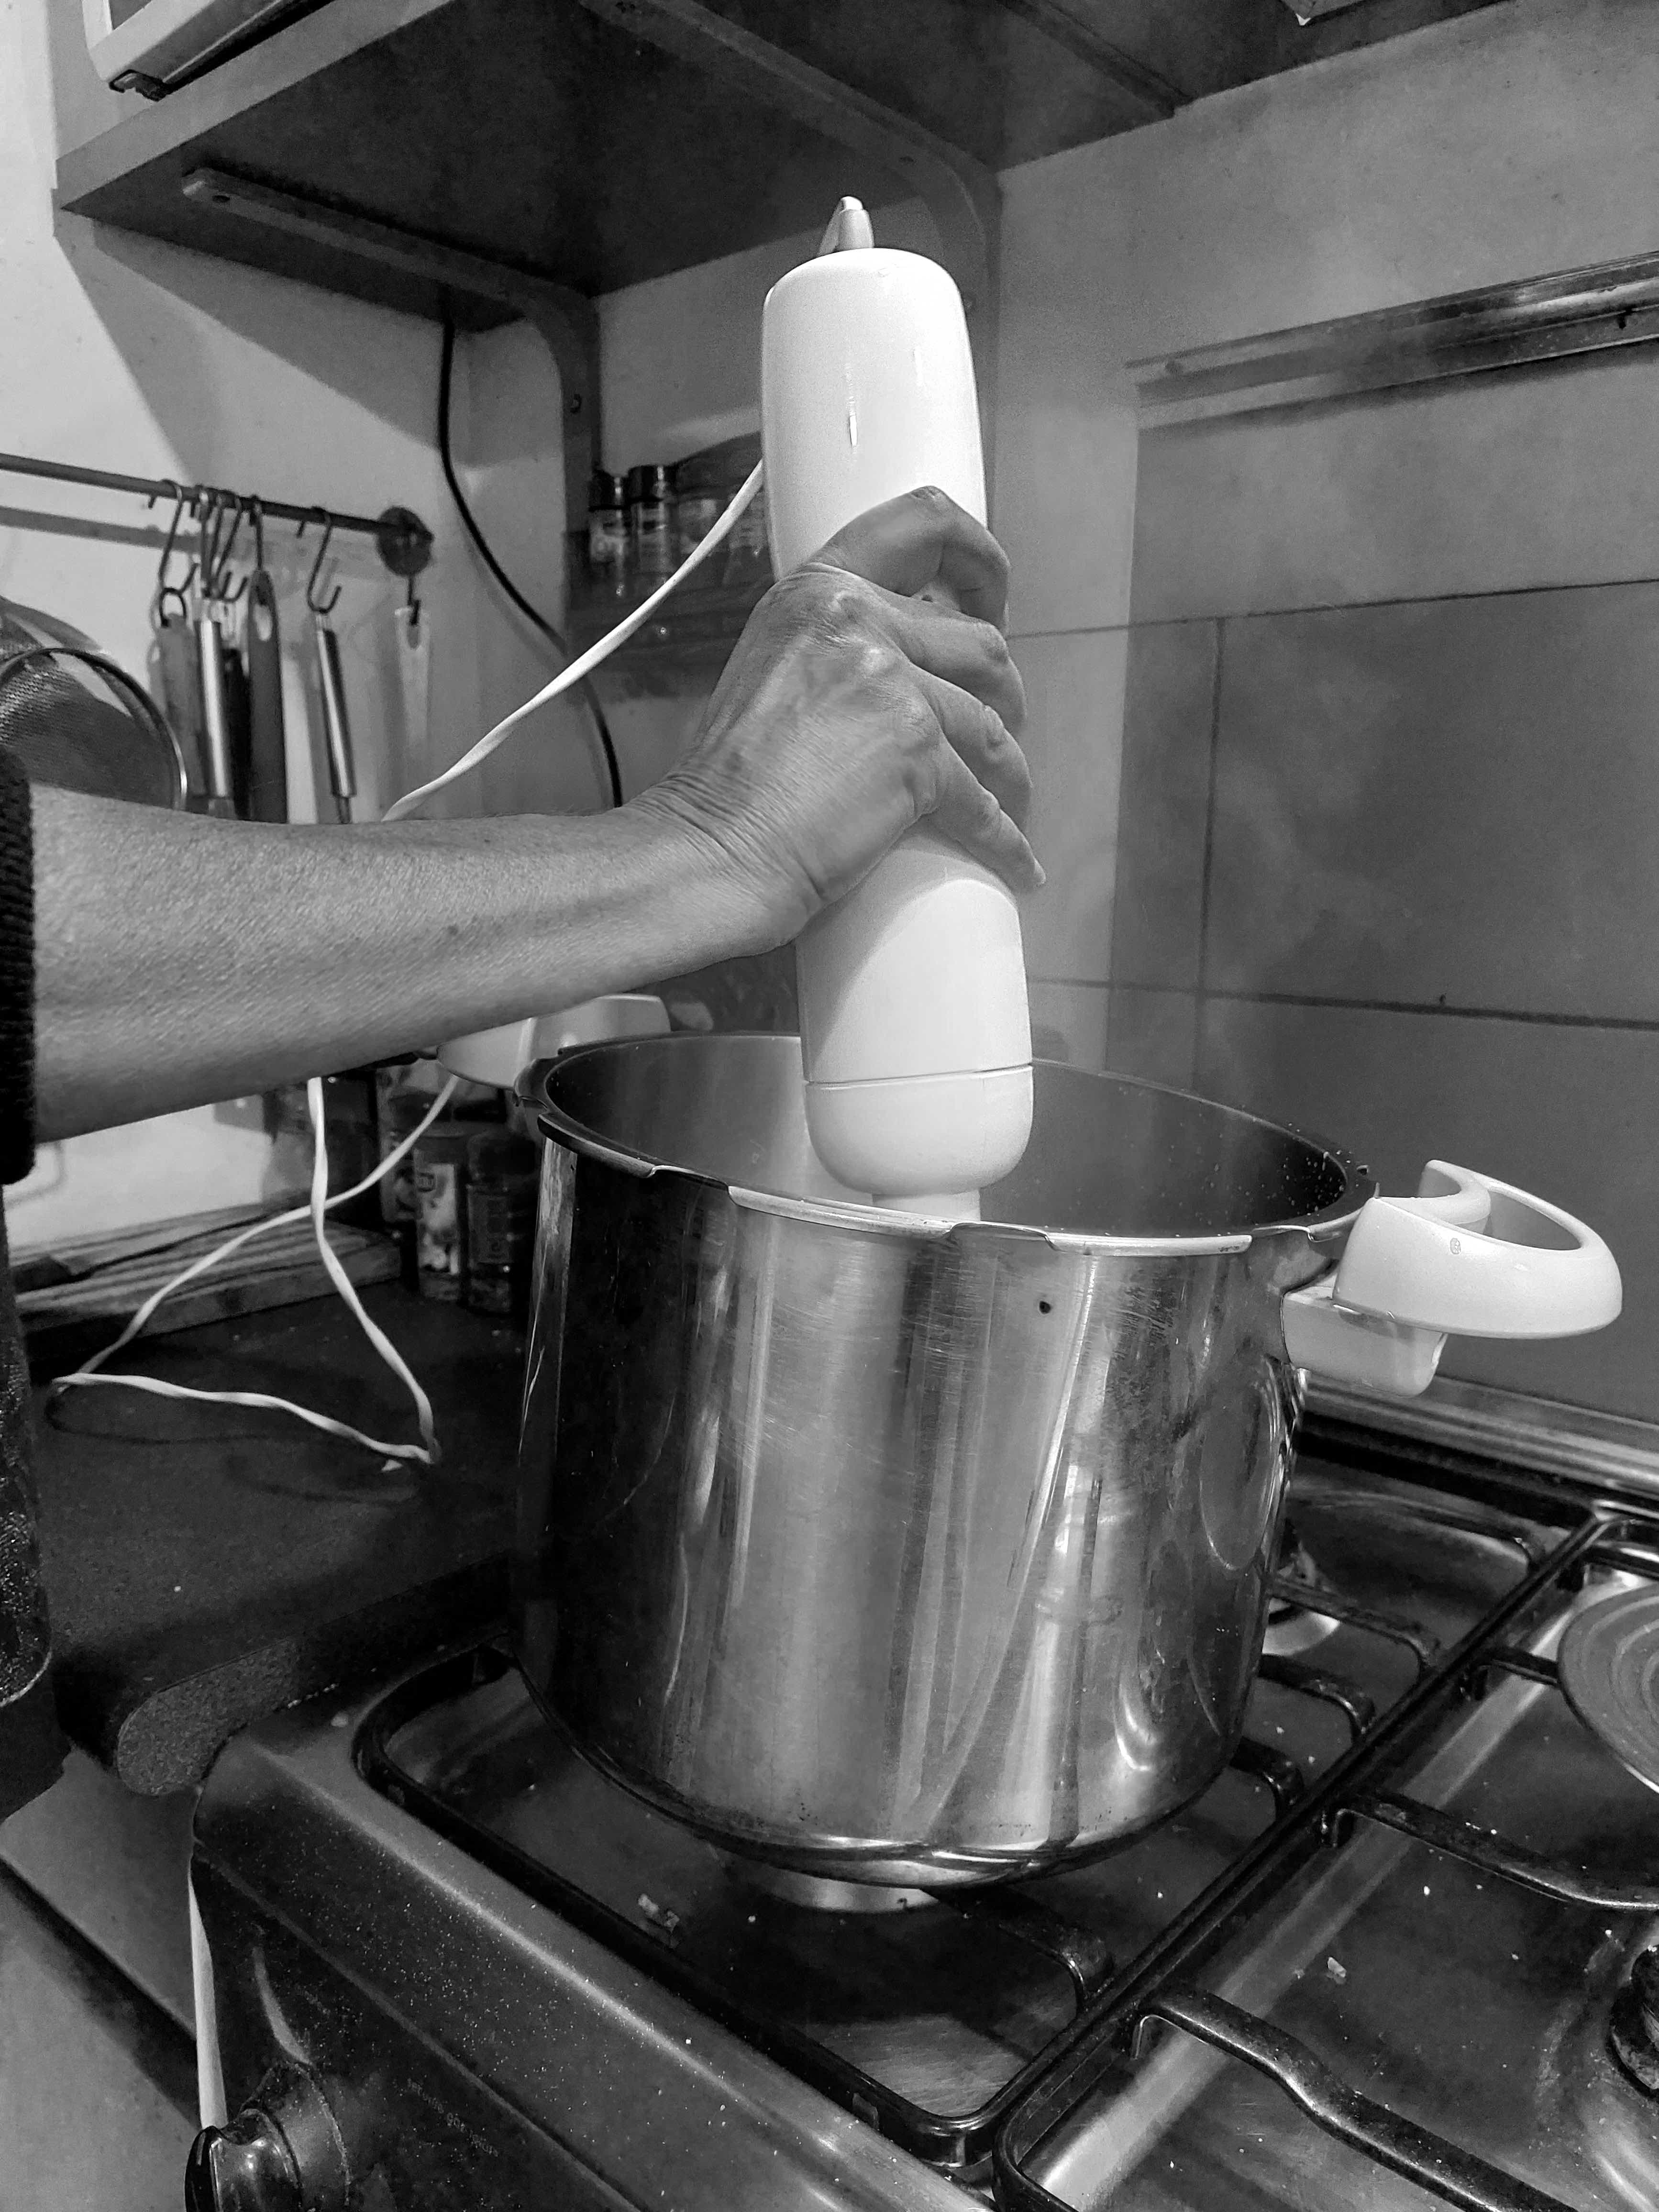 En 2010, les hommes ont passé en moyenne 24 minutes par jour à faire la cuisine contre 66 minutes pour les femmes, d’après le rapport de l’Insee “Le temps domestique et parental des hommes et des femmes : quels facteurs d’évolutions en 25 ans ?”, publié en 2015.